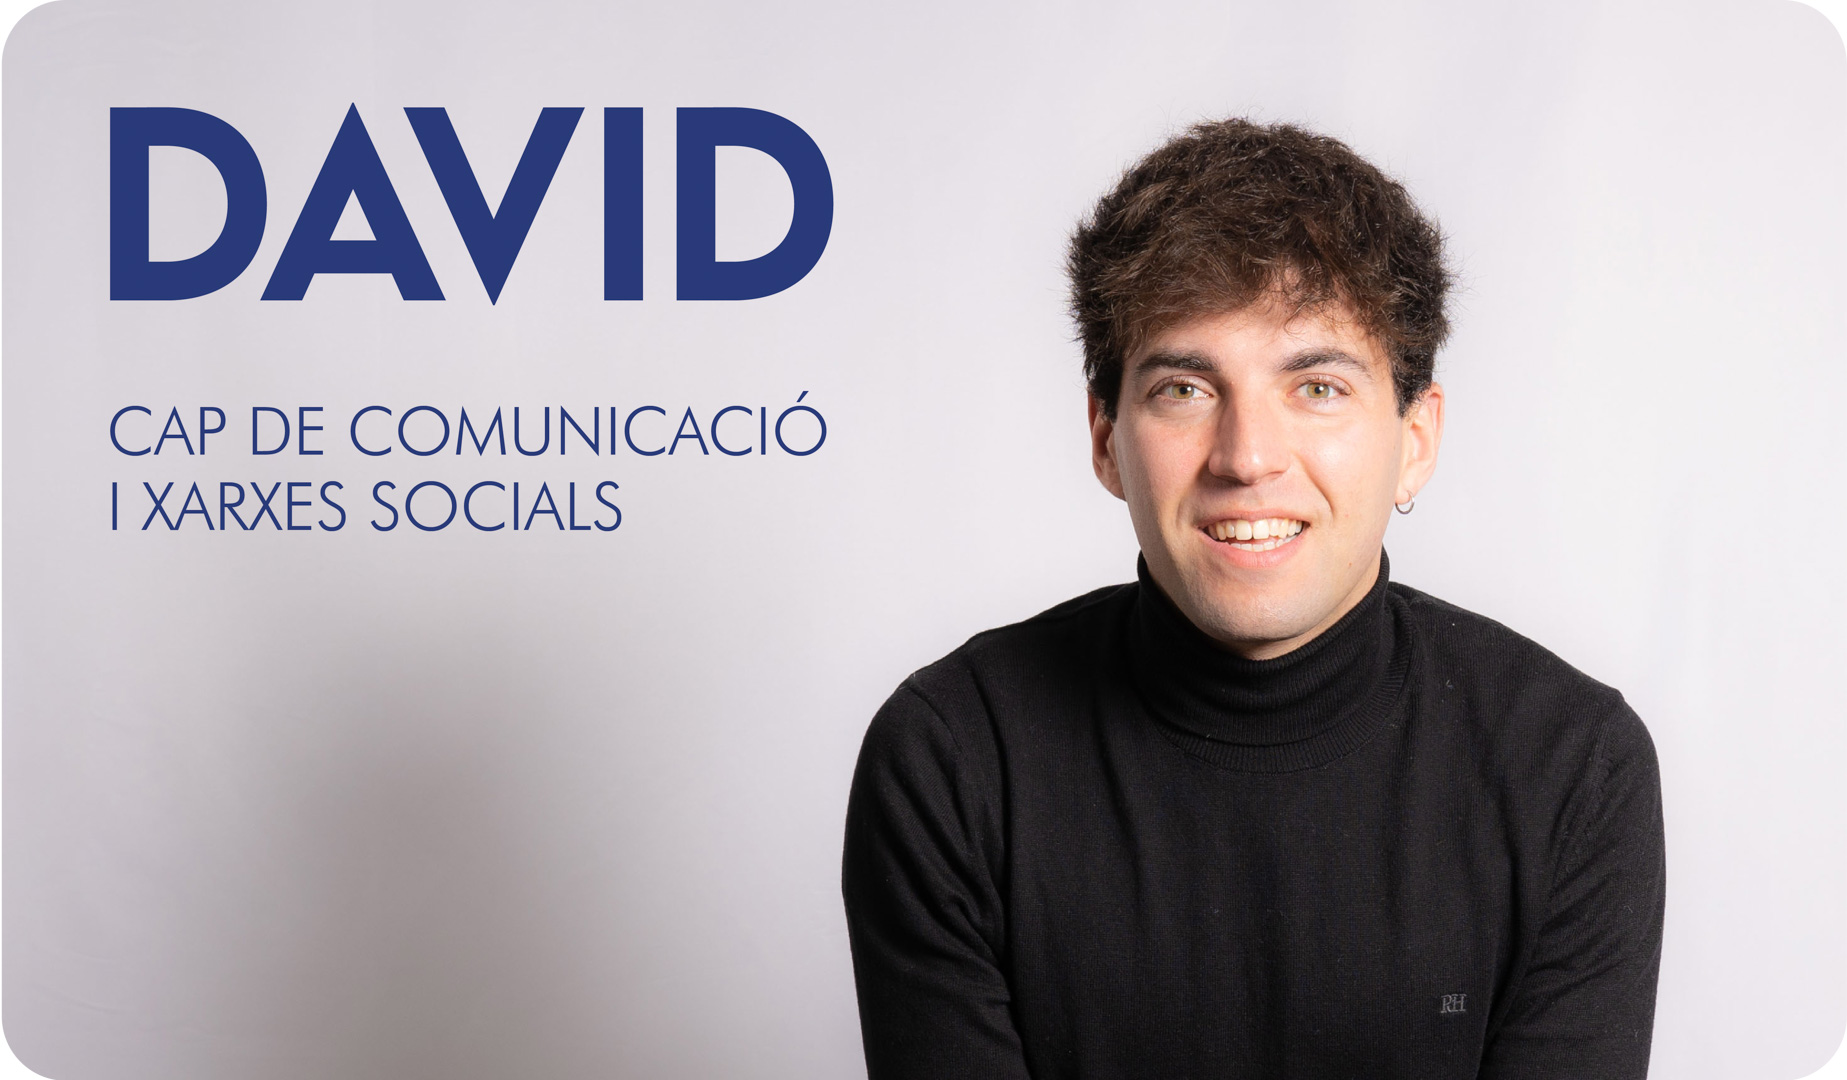 El David, cap de comunicació i xarxes socials de l'Autoescola Victor.